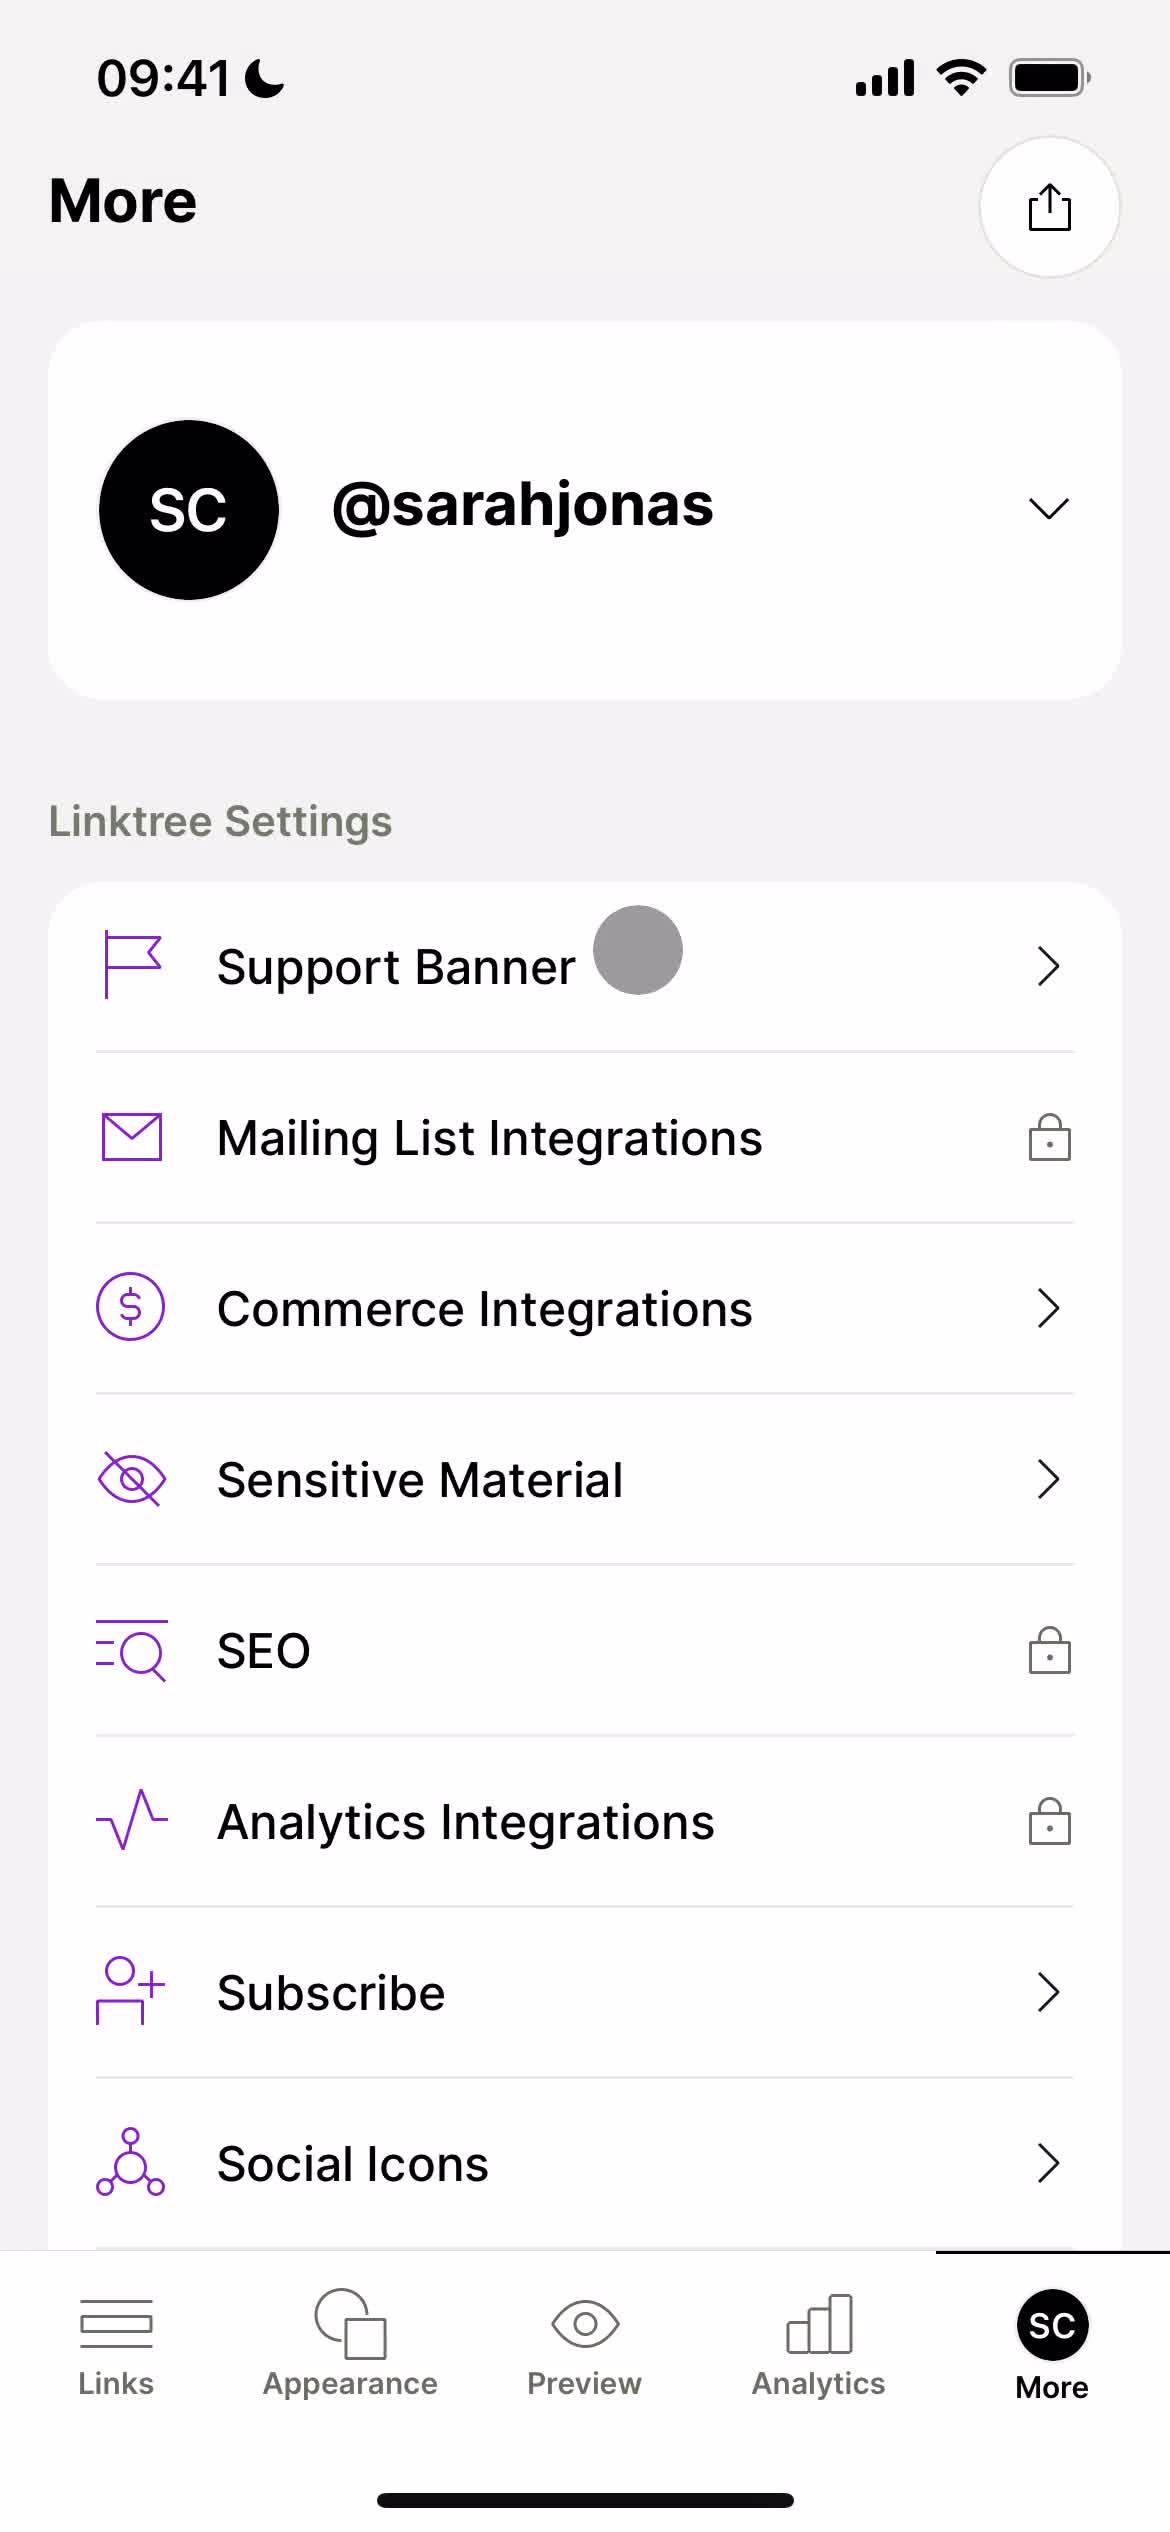 Screenshot of More on General browsing on Linktree user flow